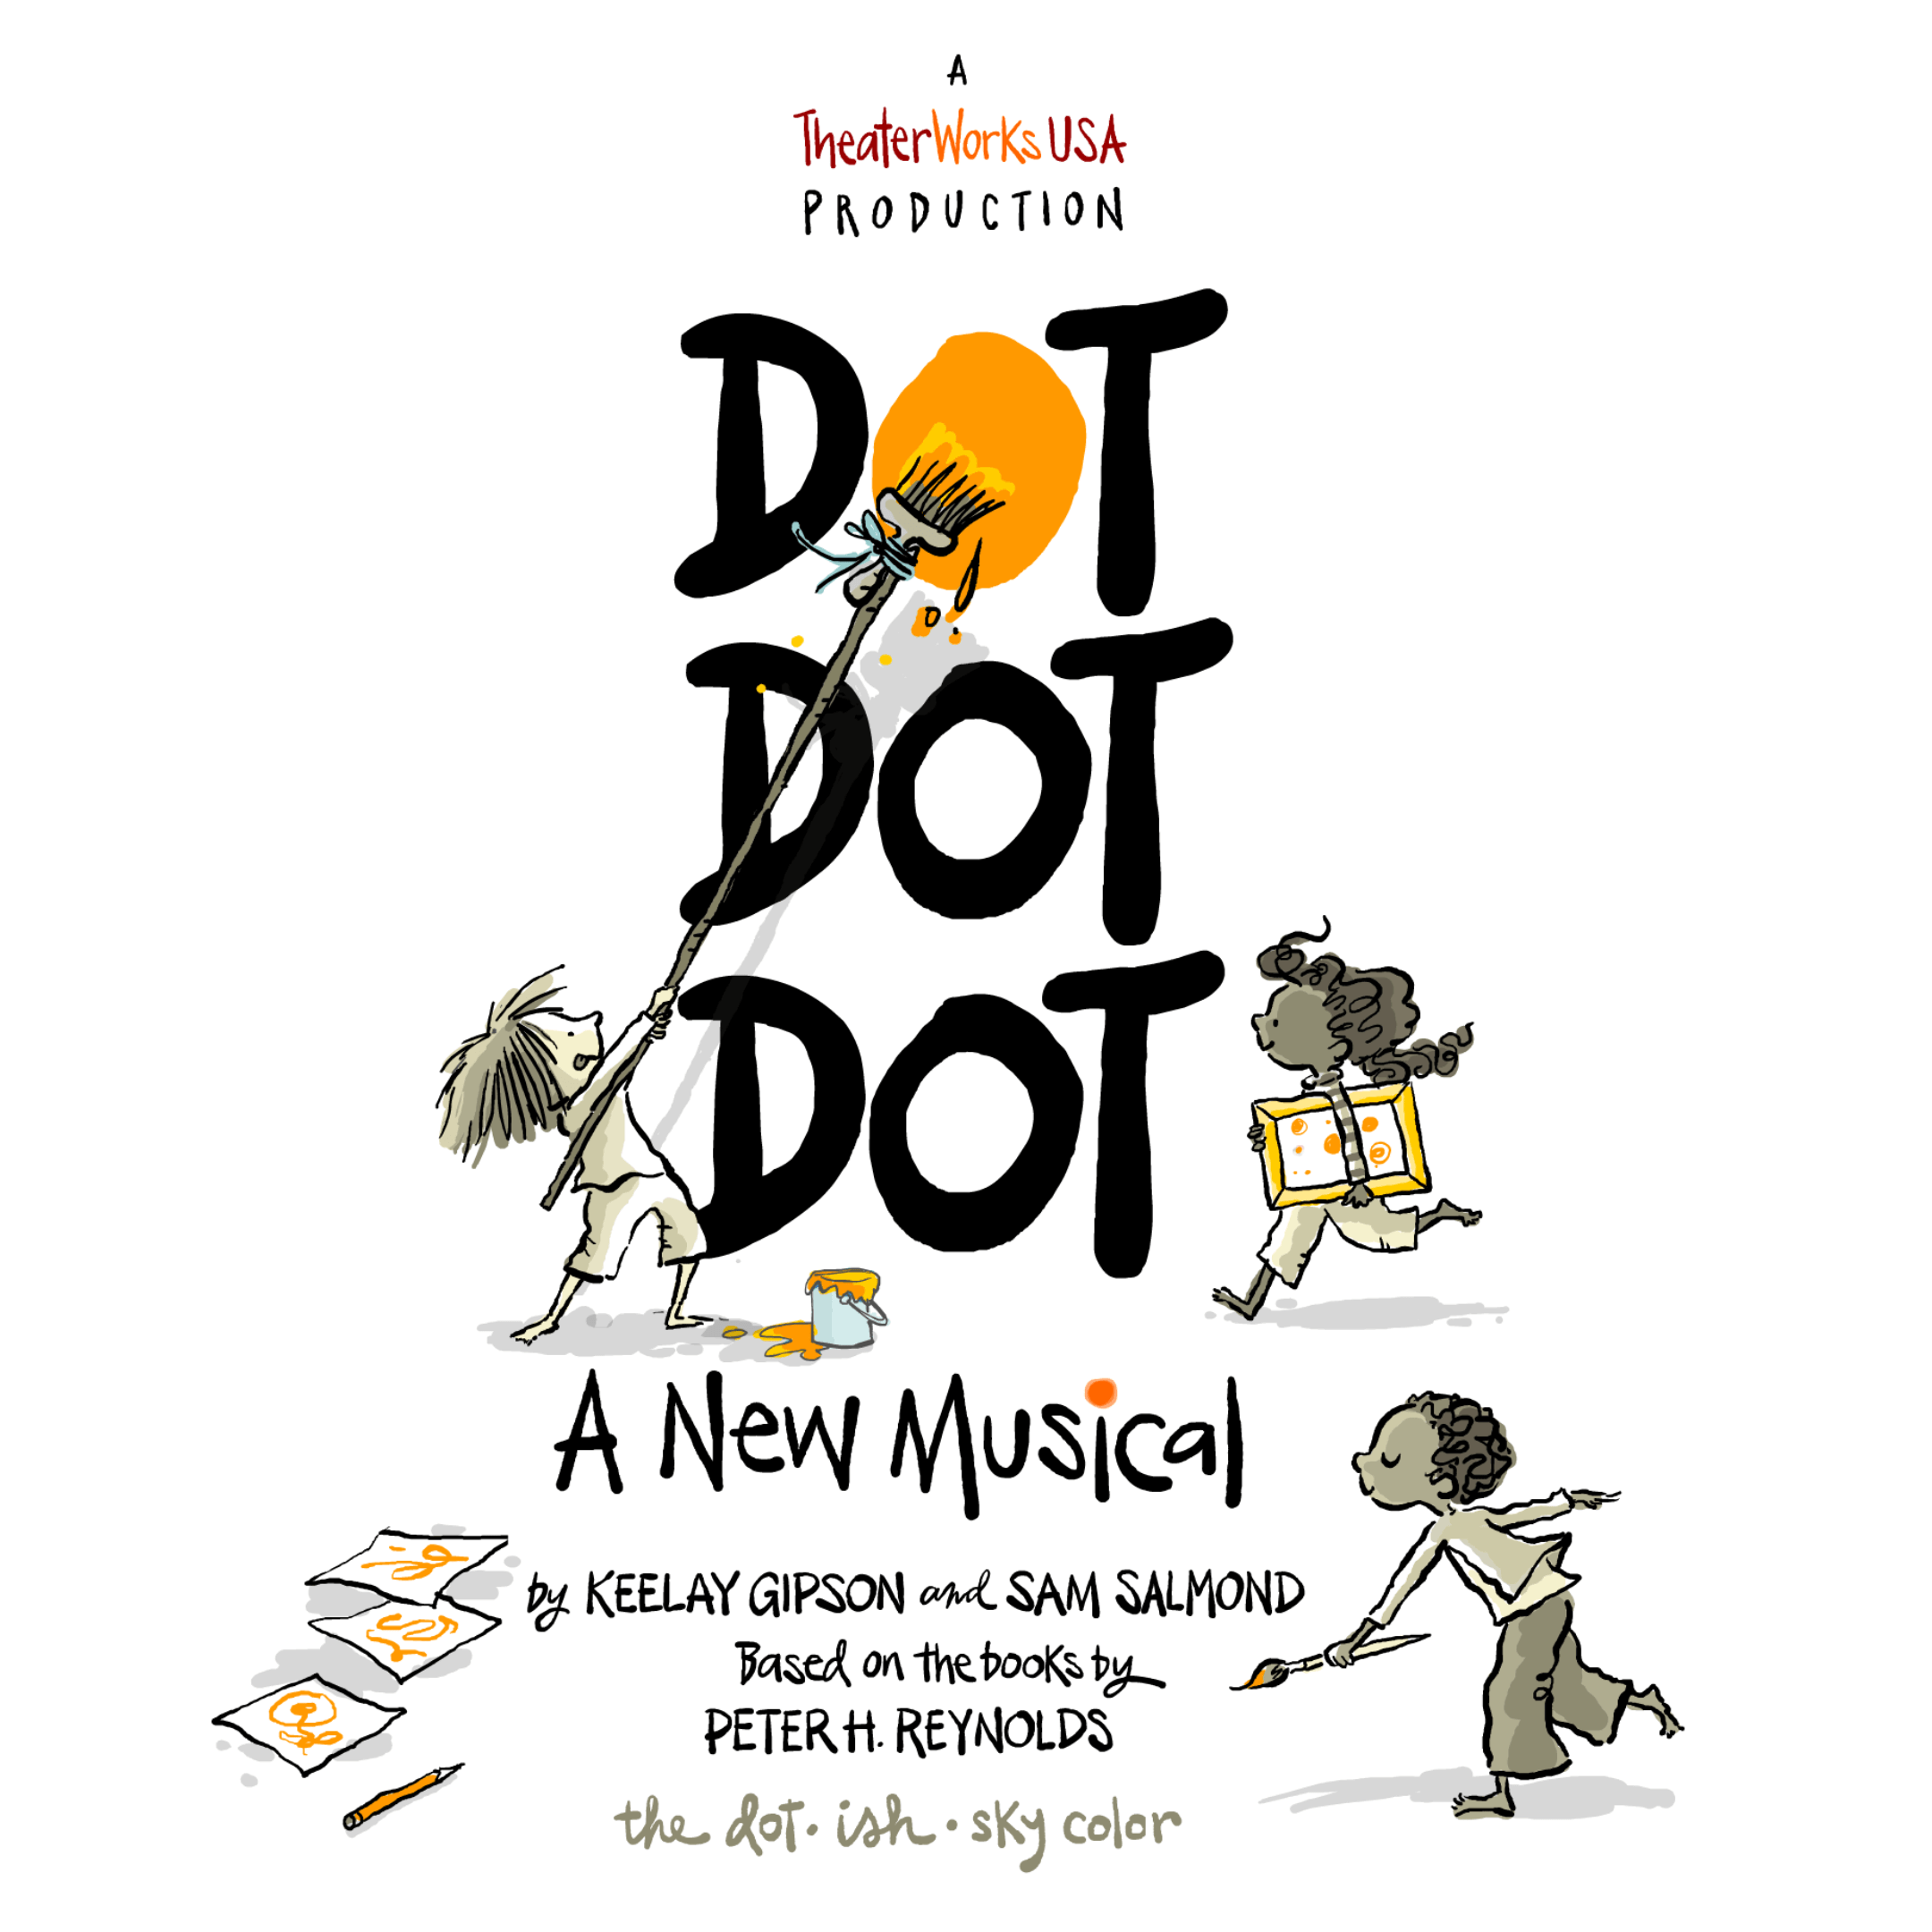 DOT DOT DOT: A NEW MUSICAL